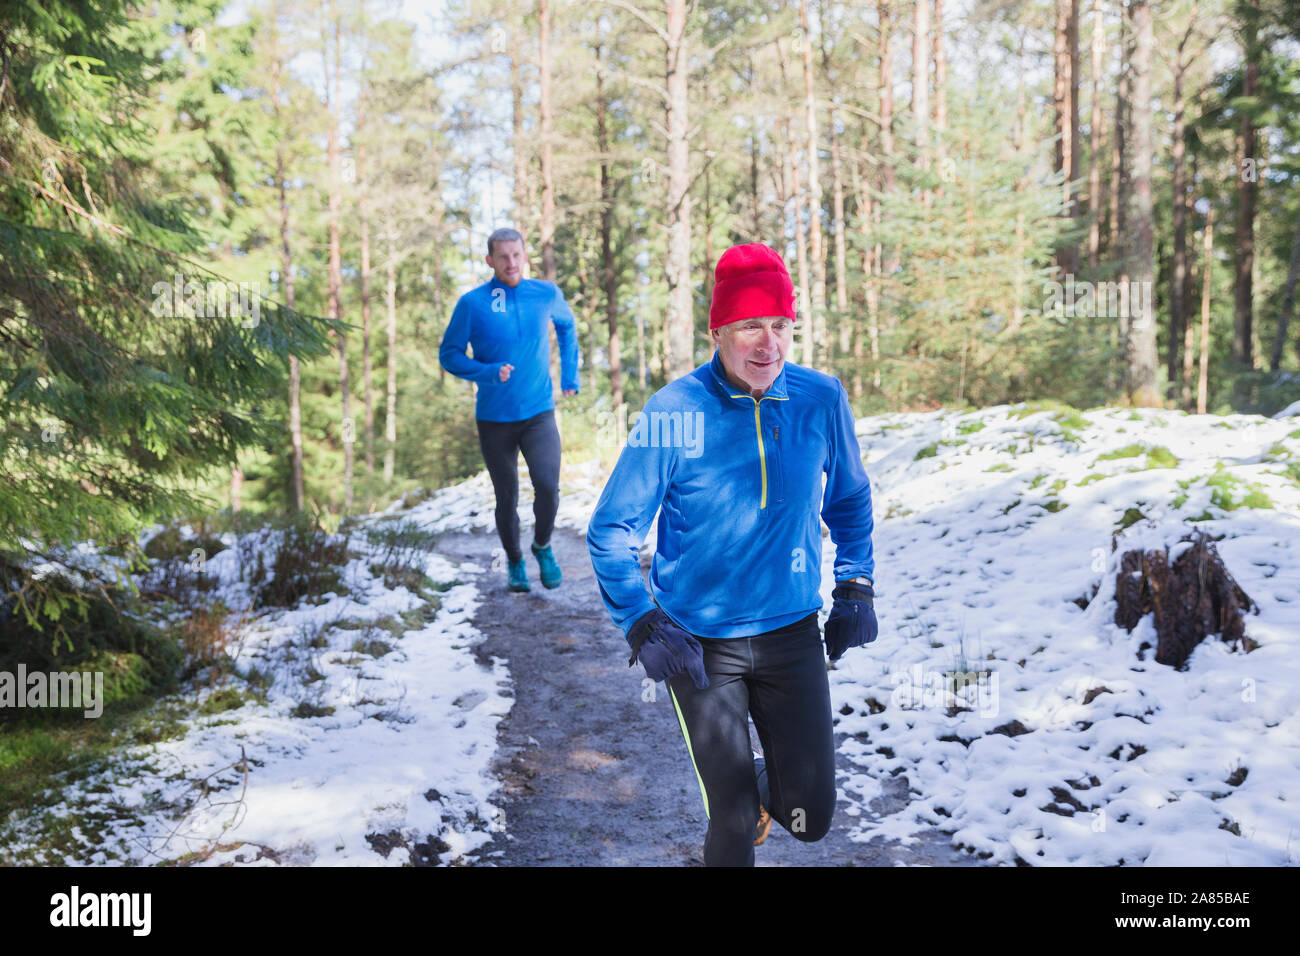 El padre y el hijo en sendero de jogging en Snowy Woods Foto de stock